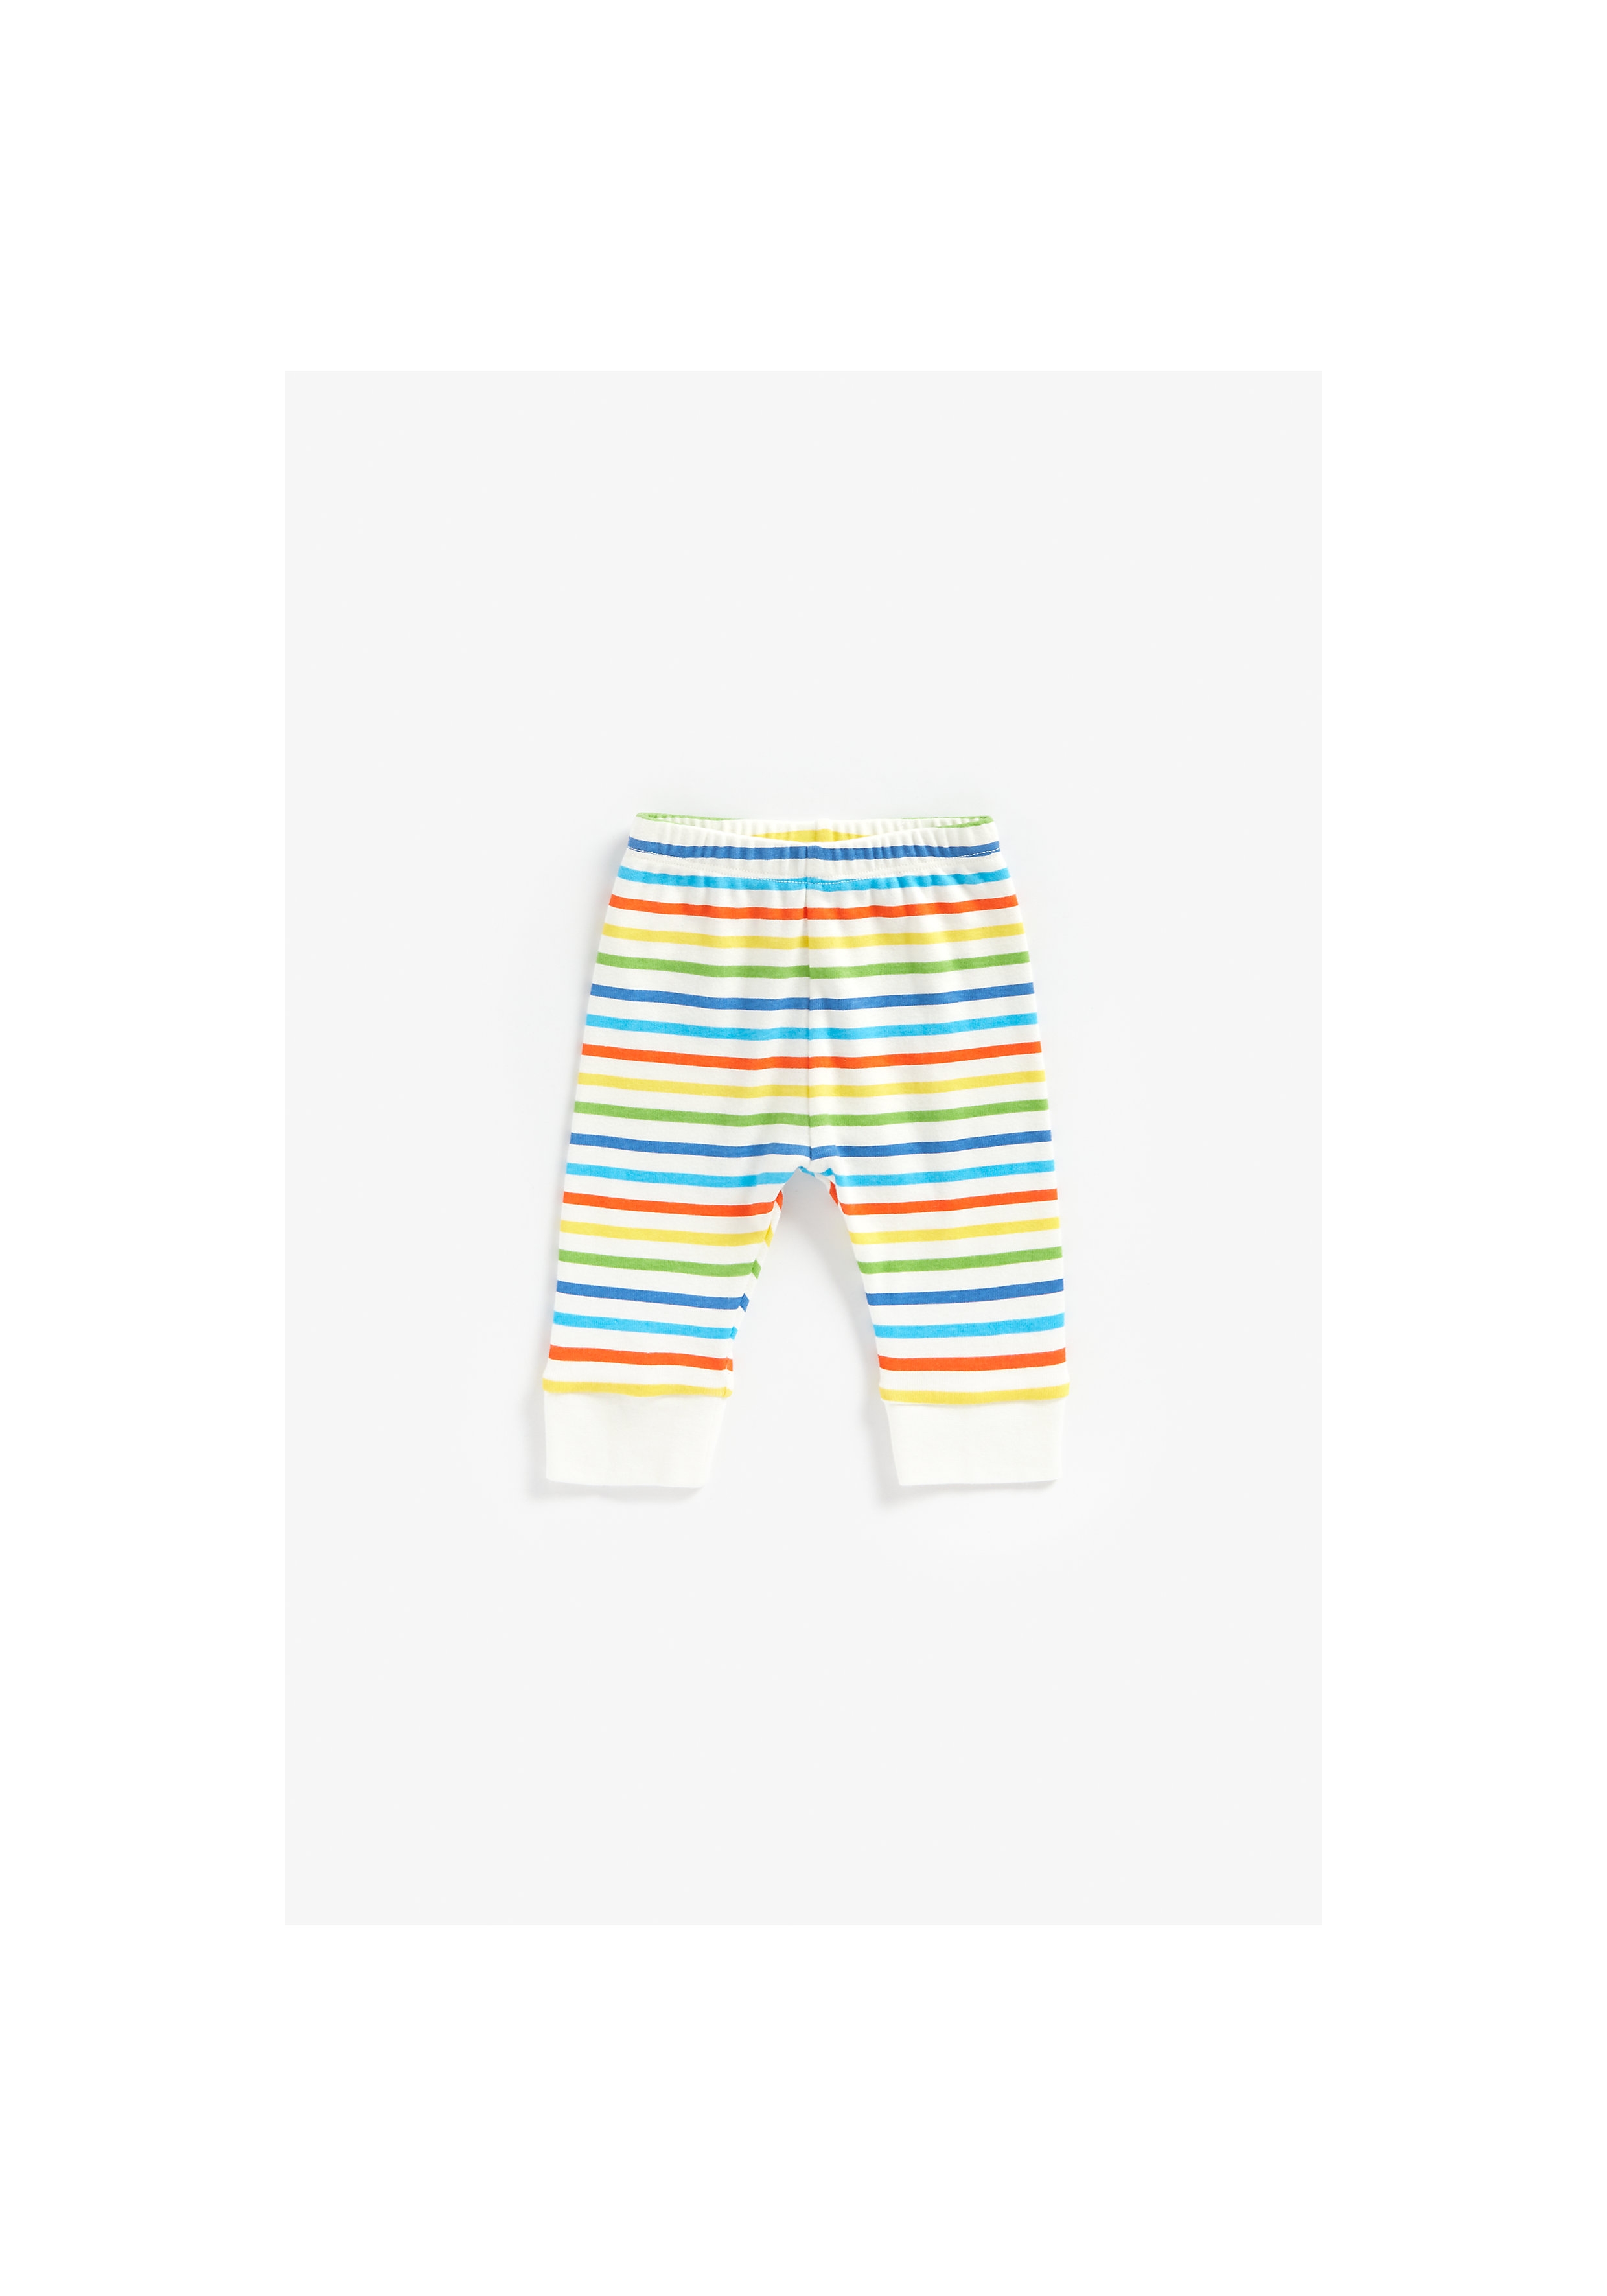 Mothercare | Unisex Full Sleeves Pyjama Set Rainbow Stripes - Pack Of 2 - Multicolor 4